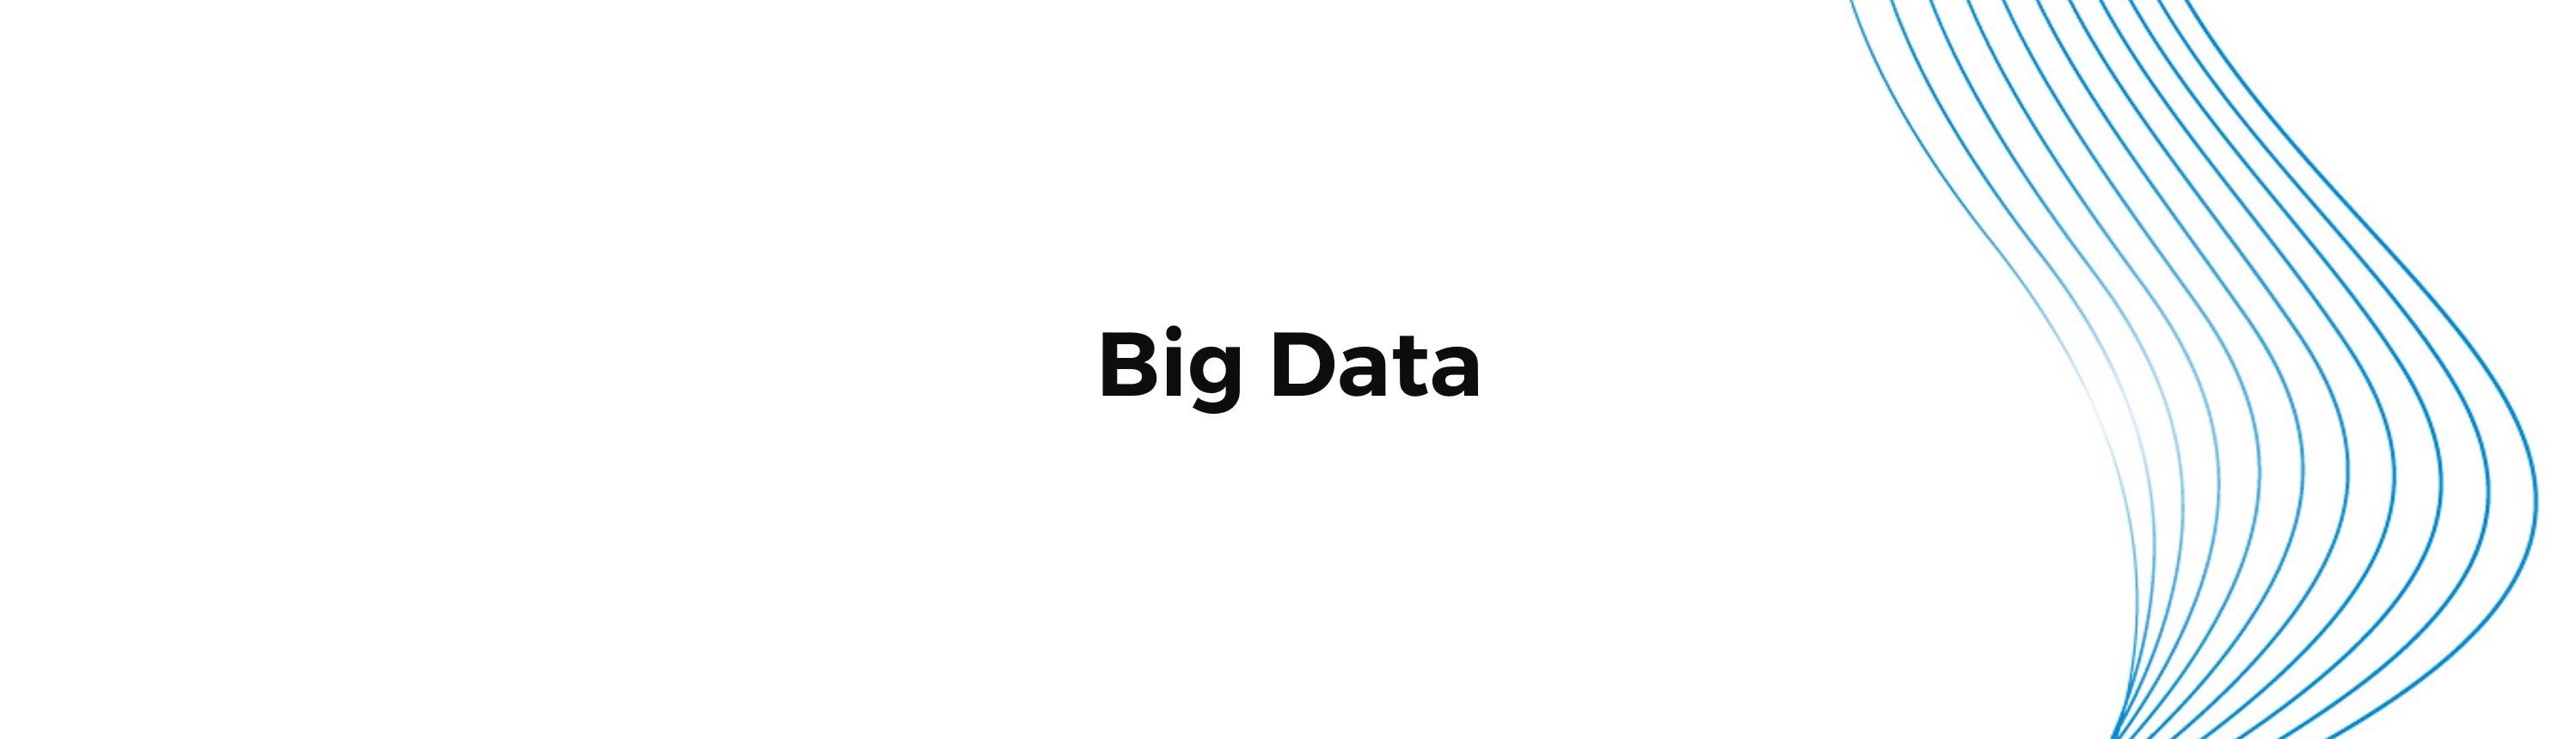 big data que es y para que sirve